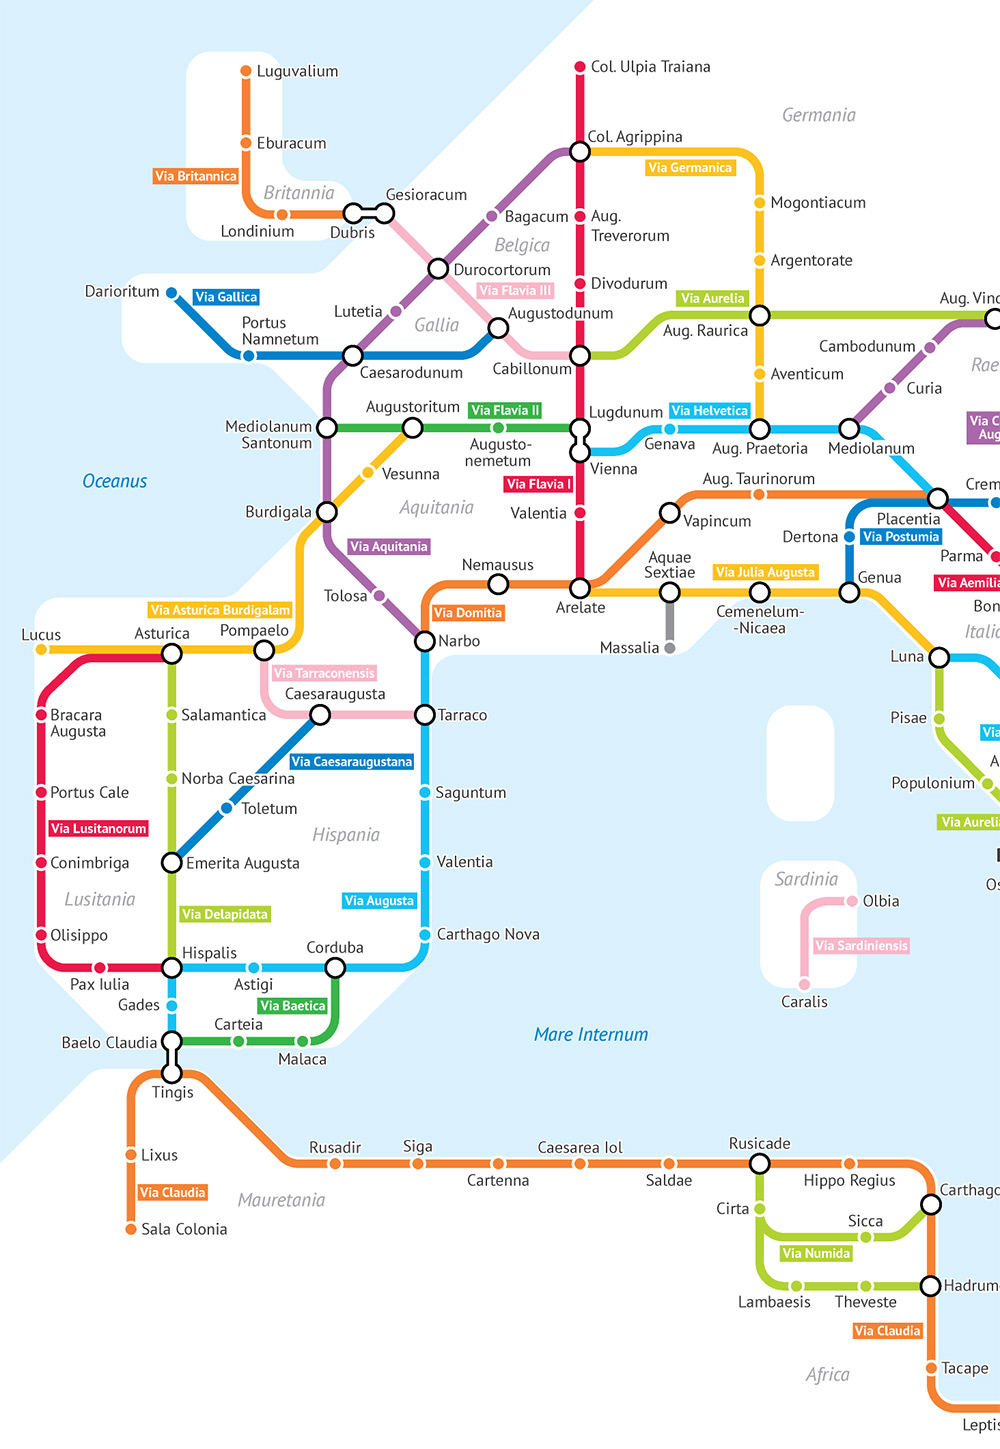 Гипотетическая карта метро Римской империи от Александра Трубецкого